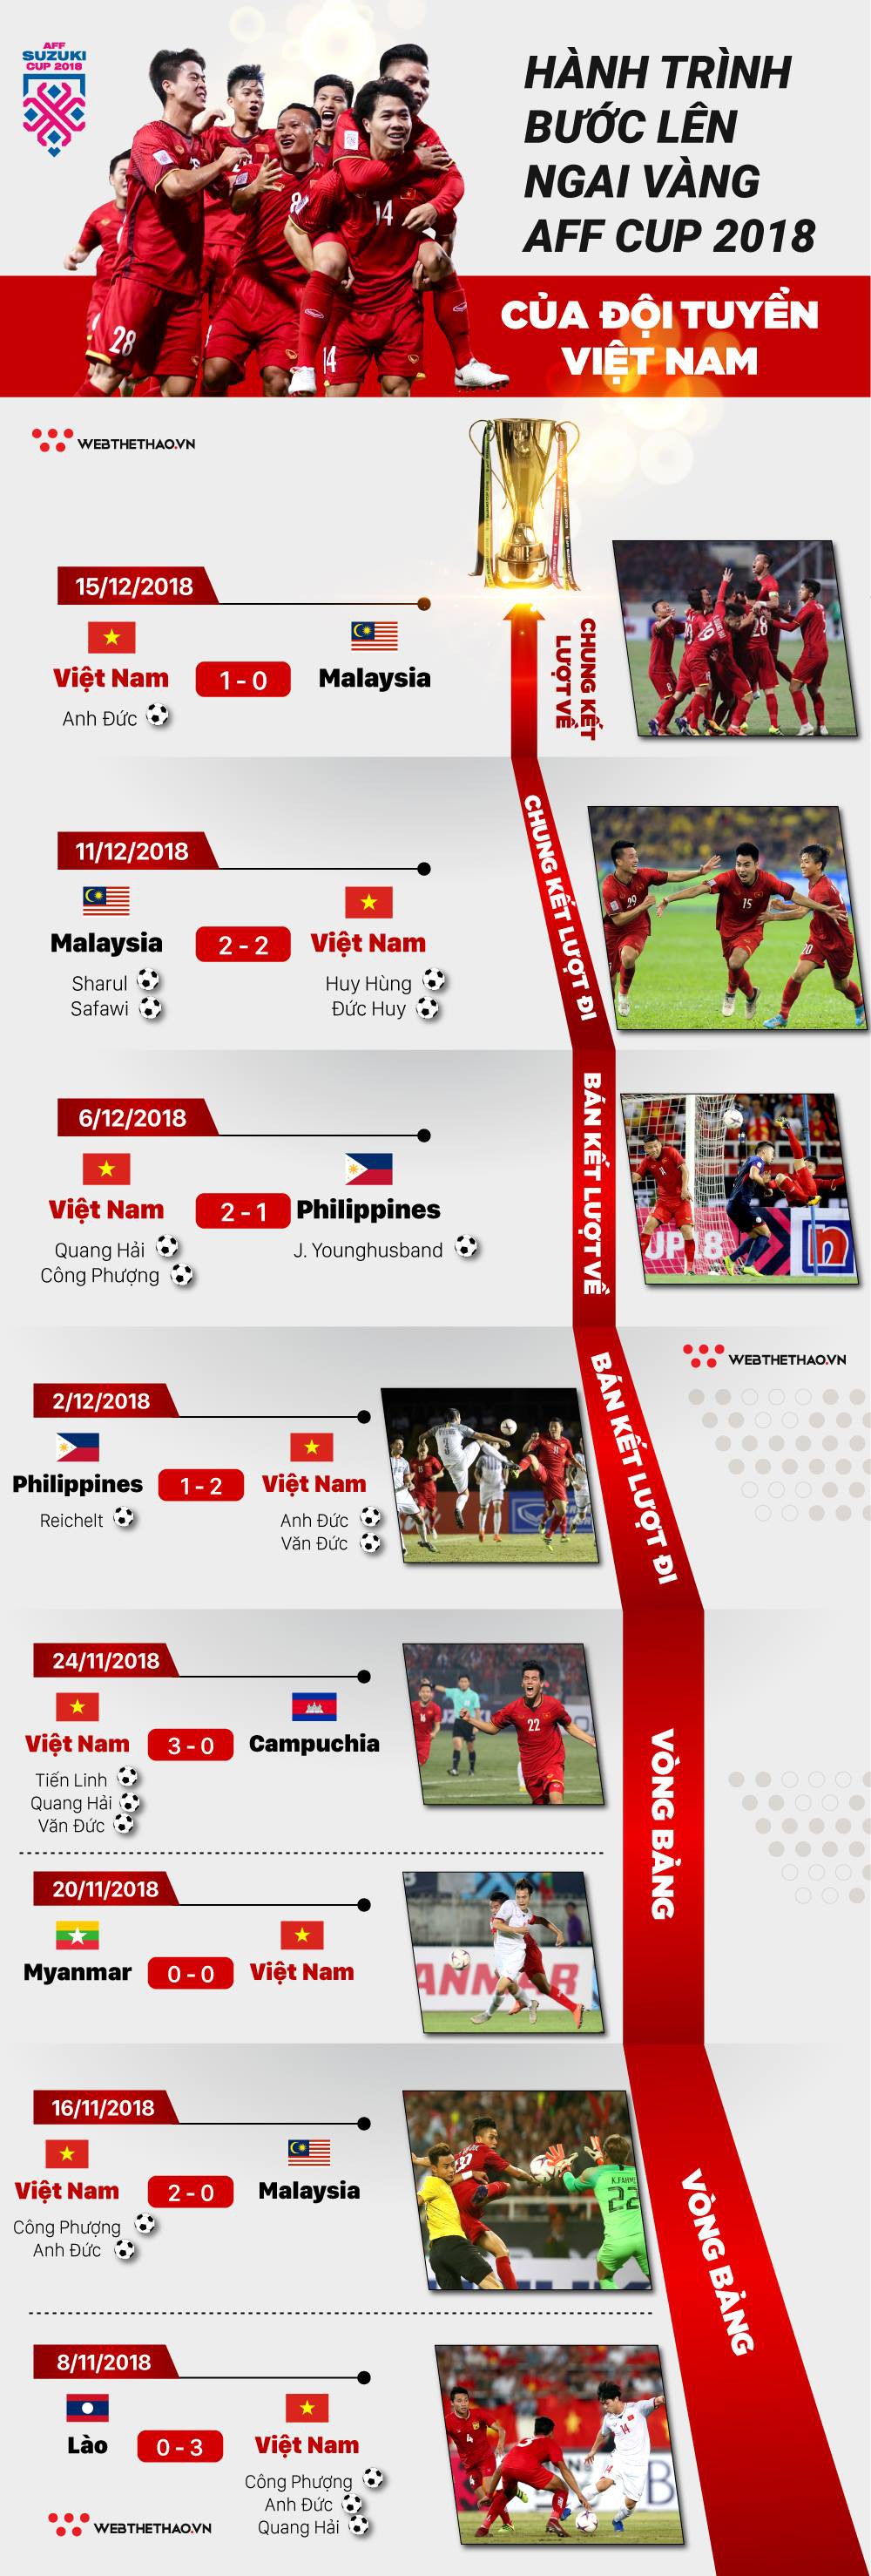 Infographic: Hành trình bước lên ngai vàng AFF Cup 2018 của đội tuyển Việt Nam - Ảnh 1.